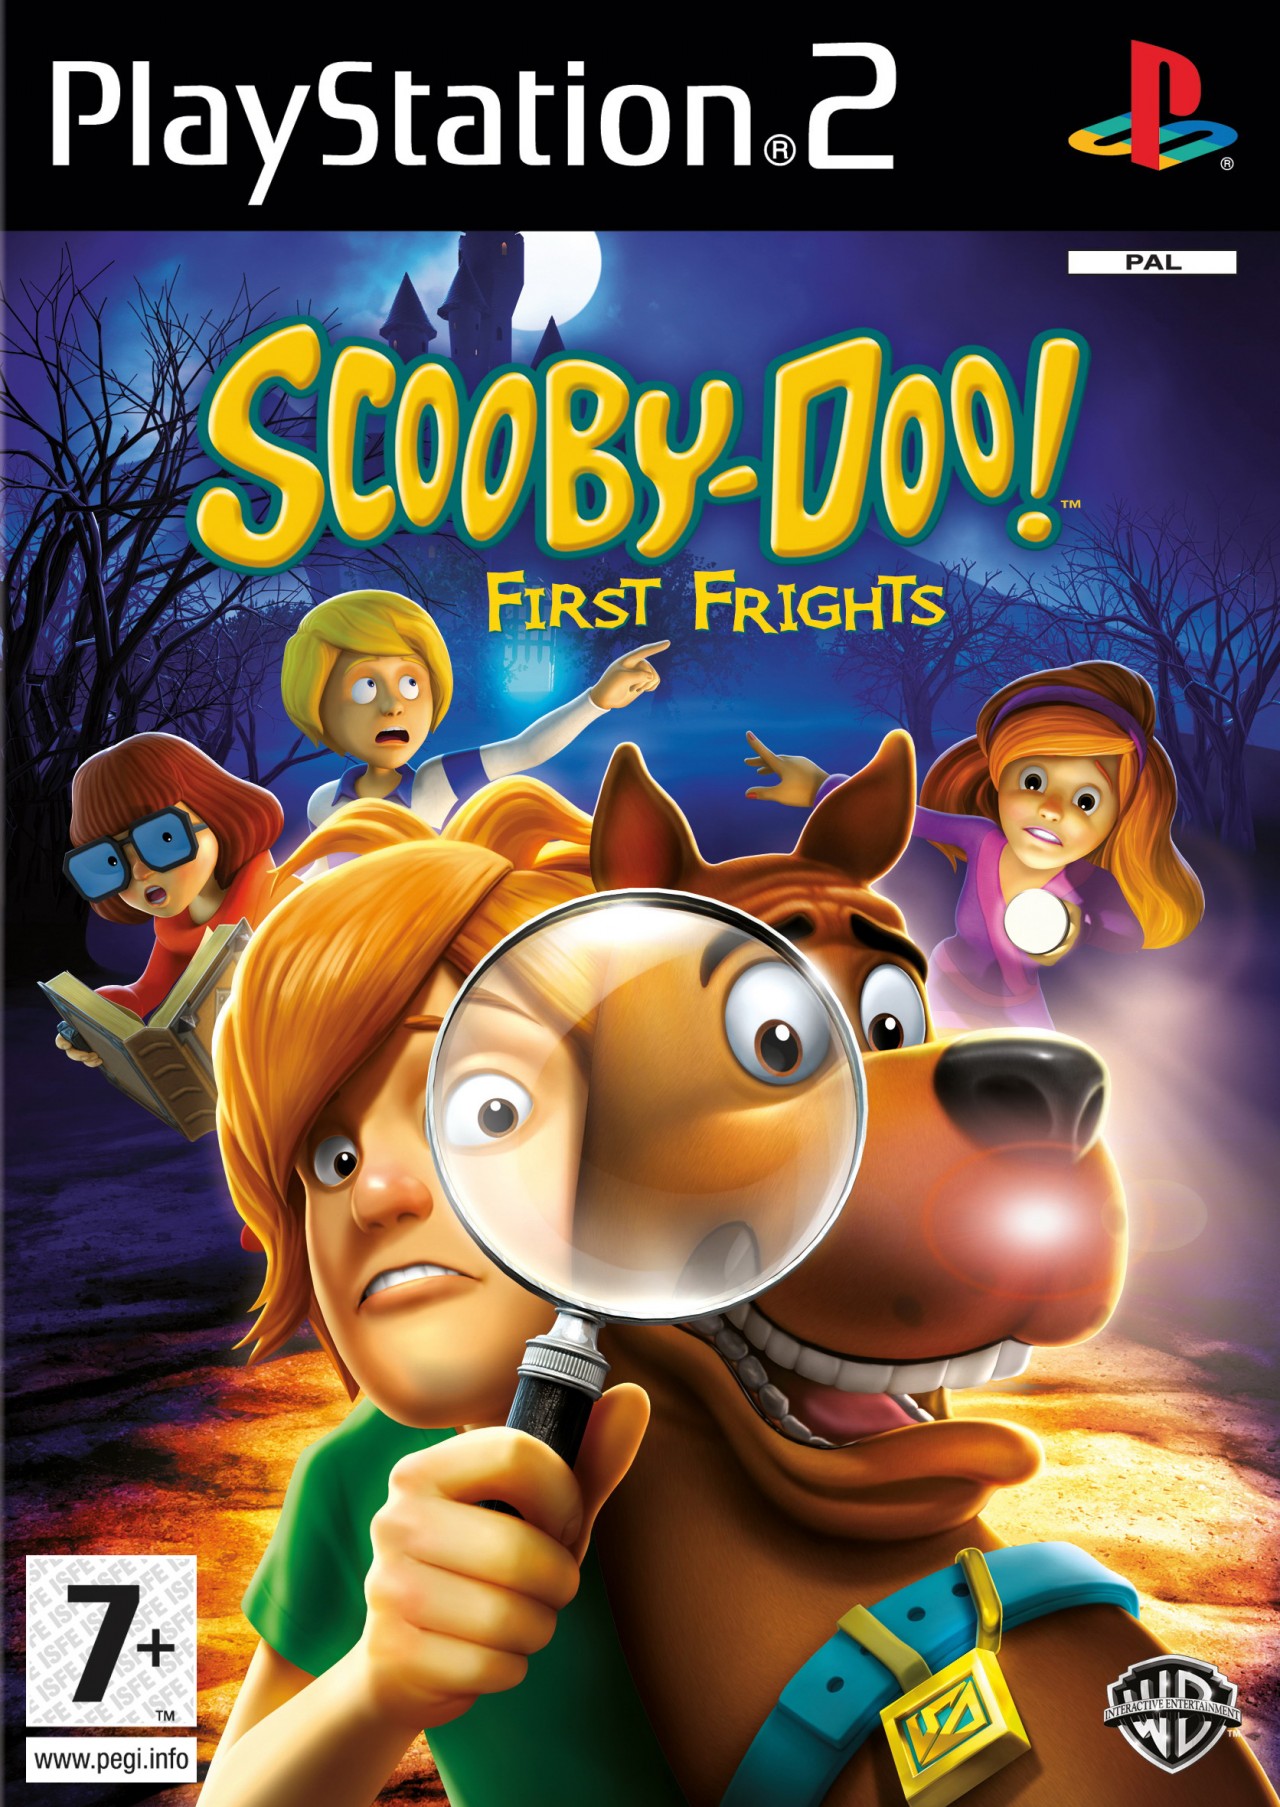 Teoría de la relatividad cuello diversión Scooby Doo First Frights PS2, DS y Wii: Ultimagame